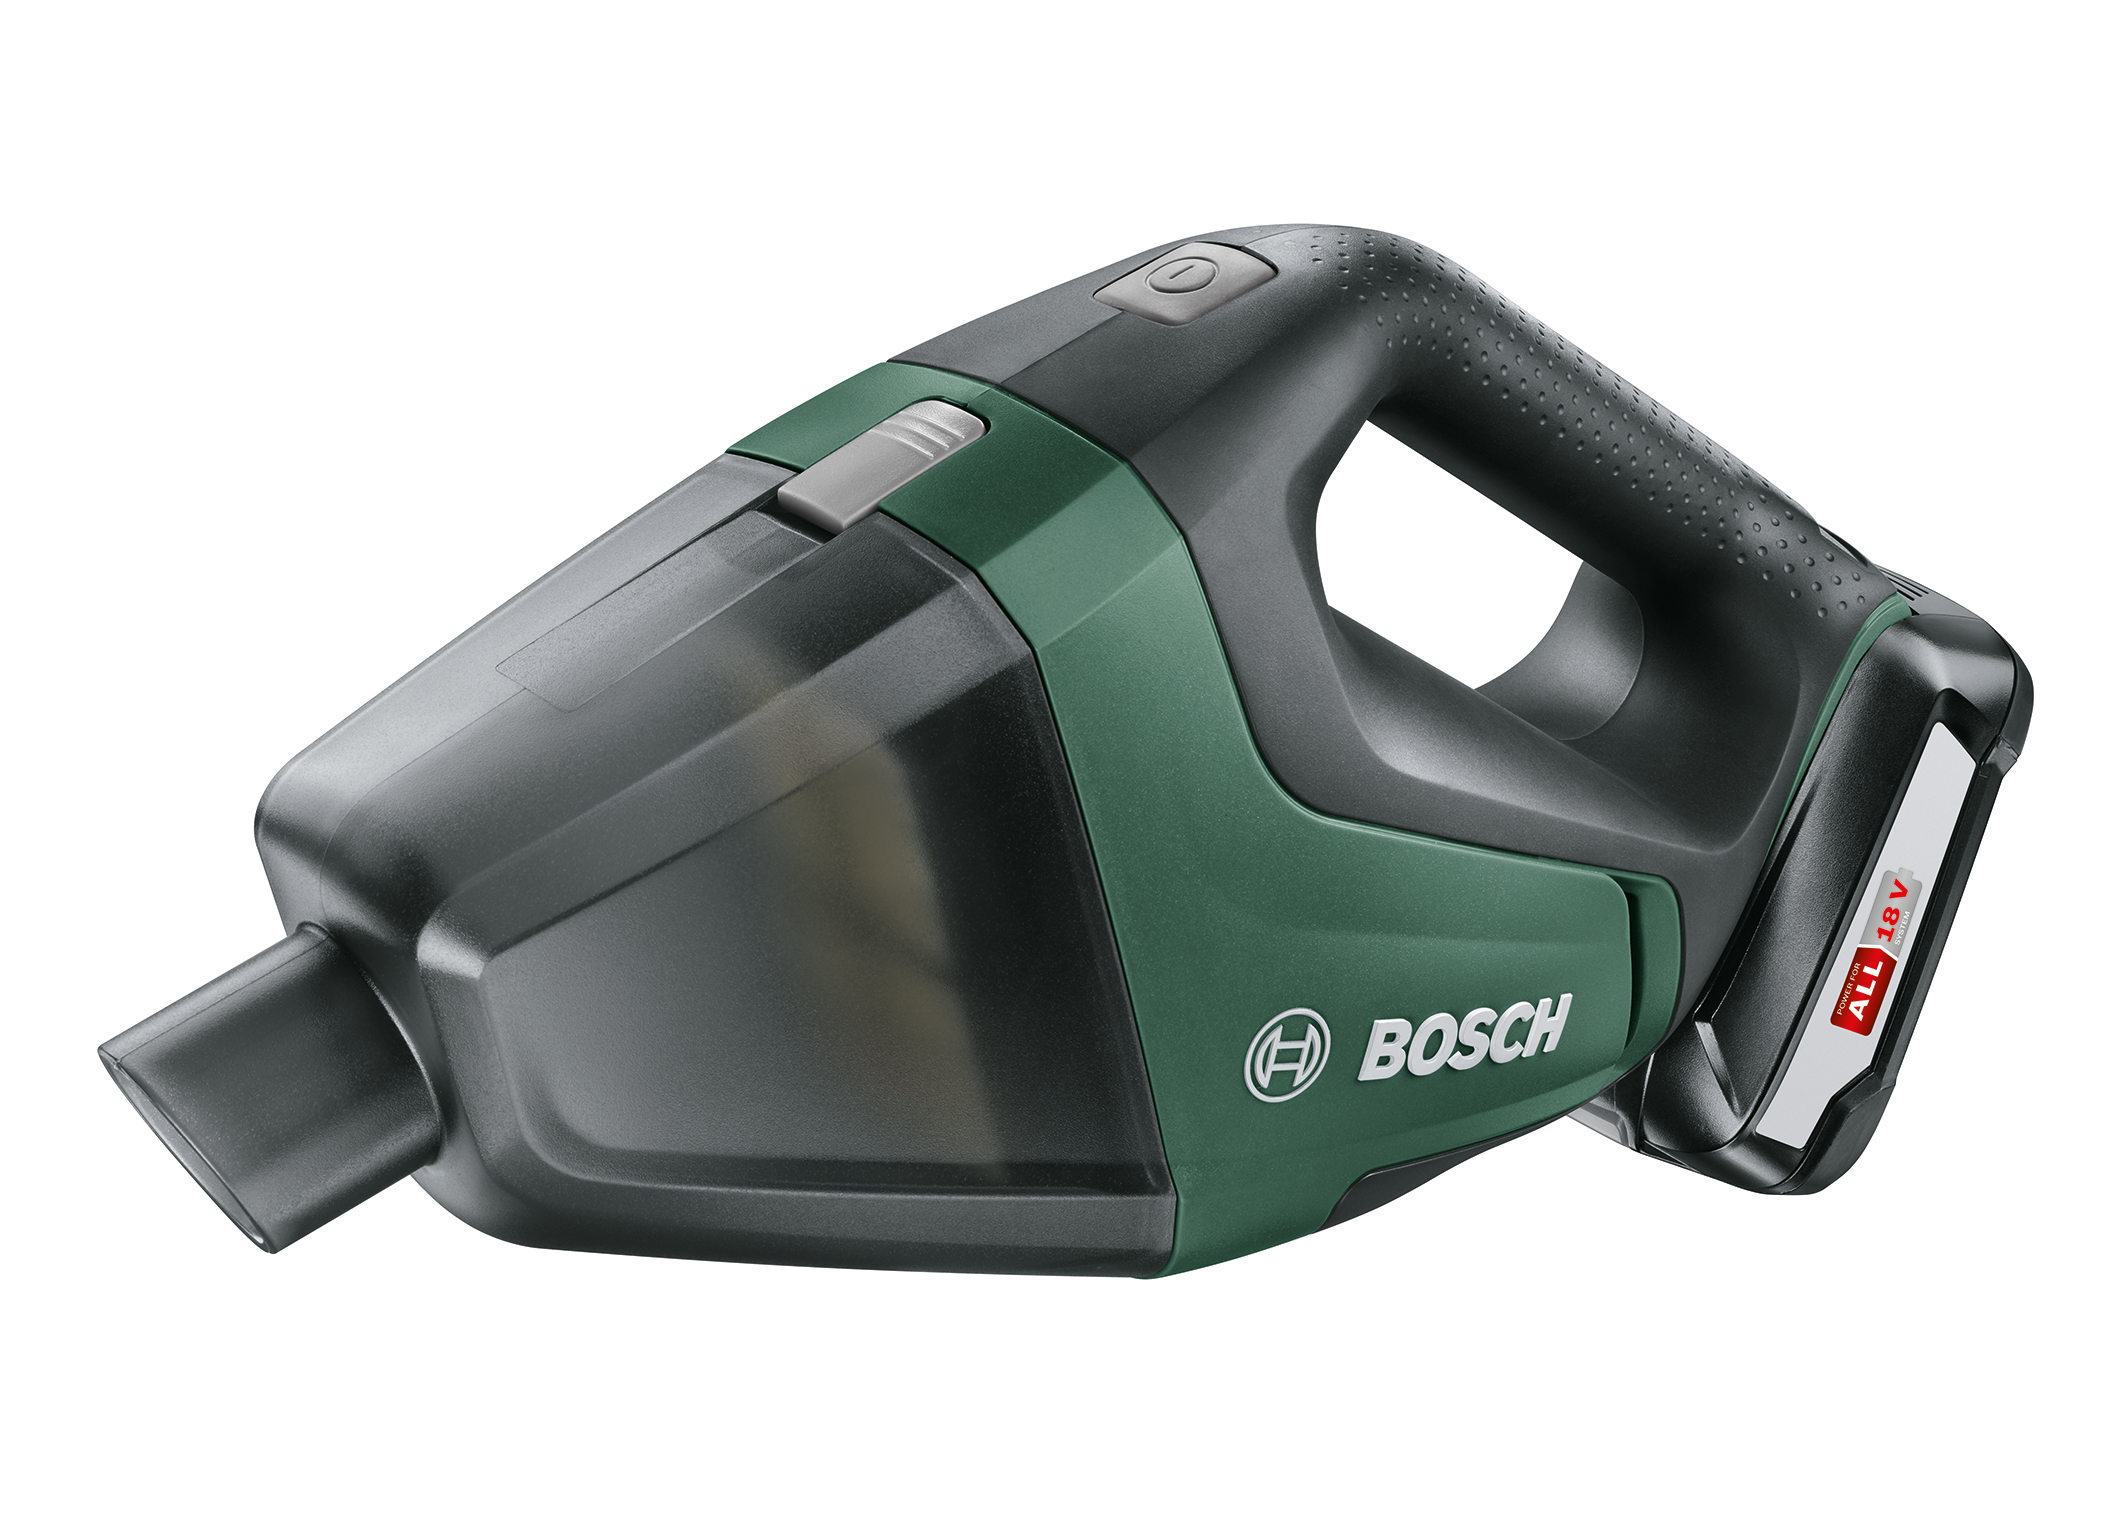 Bosch erweitert 18 Volt-System für Heimwerker:  Akku-Handstaubsauger UniversalVac 18